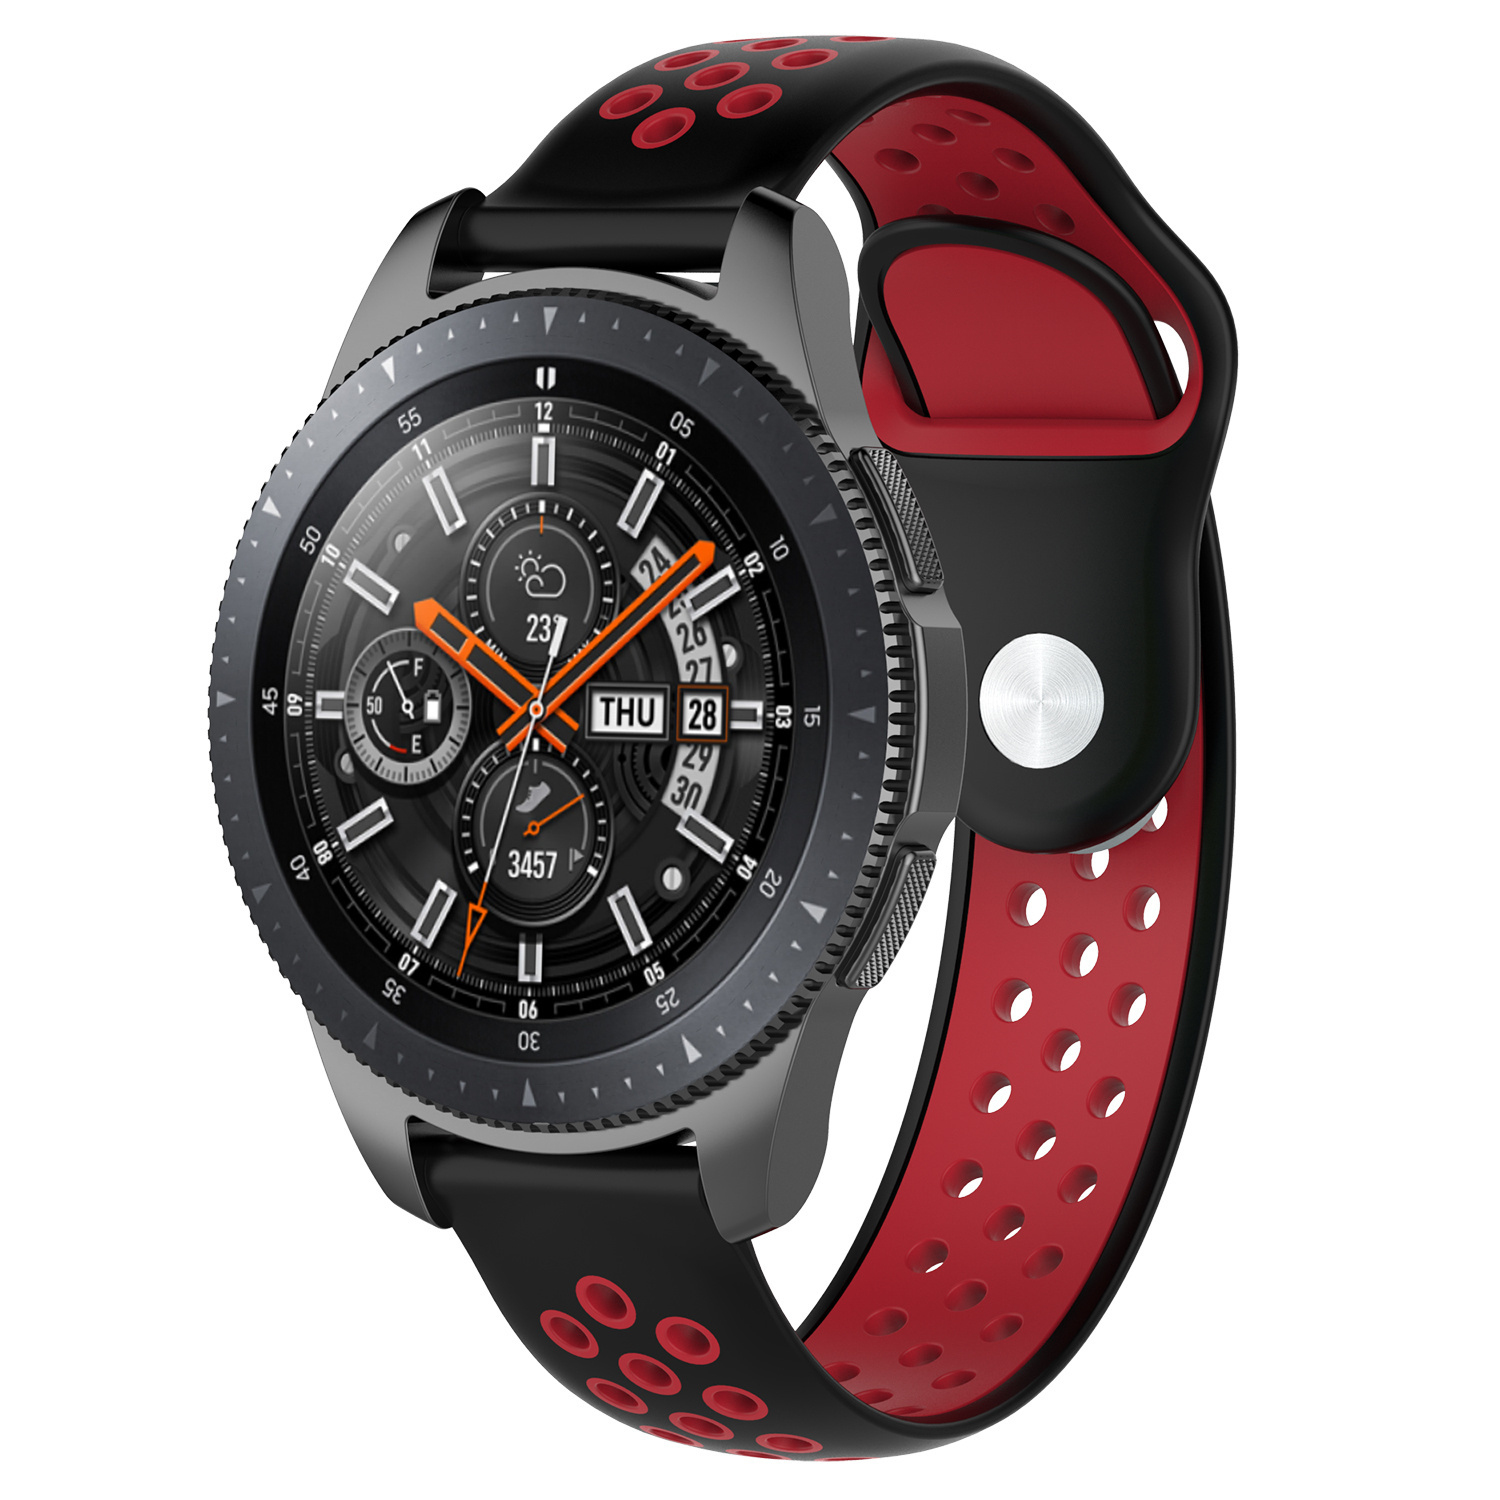 Correa deportiva doble para el Samsung Galaxy Watch - negro rojo